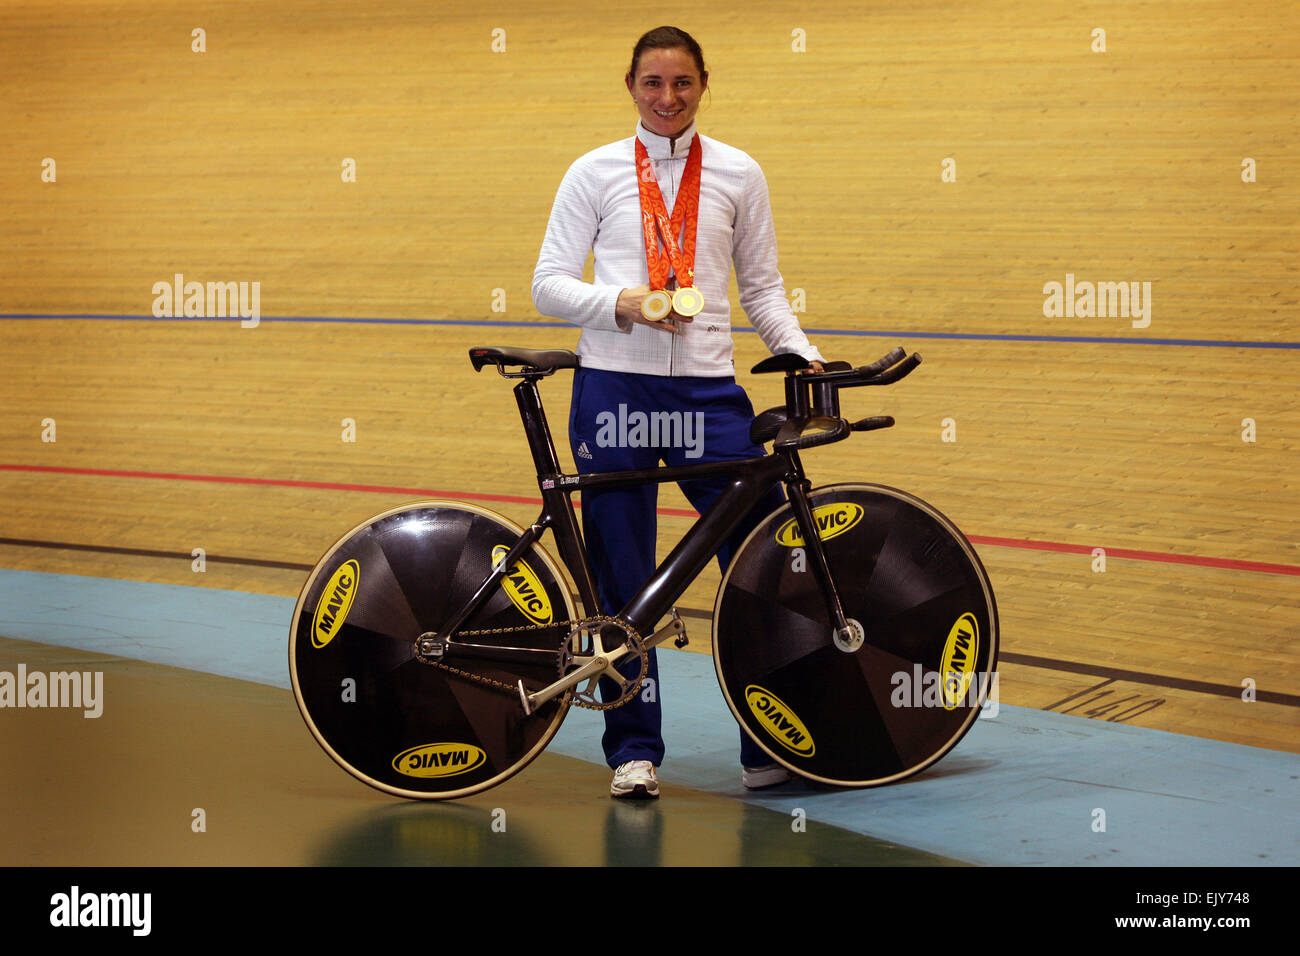 Doble medallista de oro paralímpico Sarah Storey en el Velódromo de Manchester. Imagen: Chris Bull Foto de stock